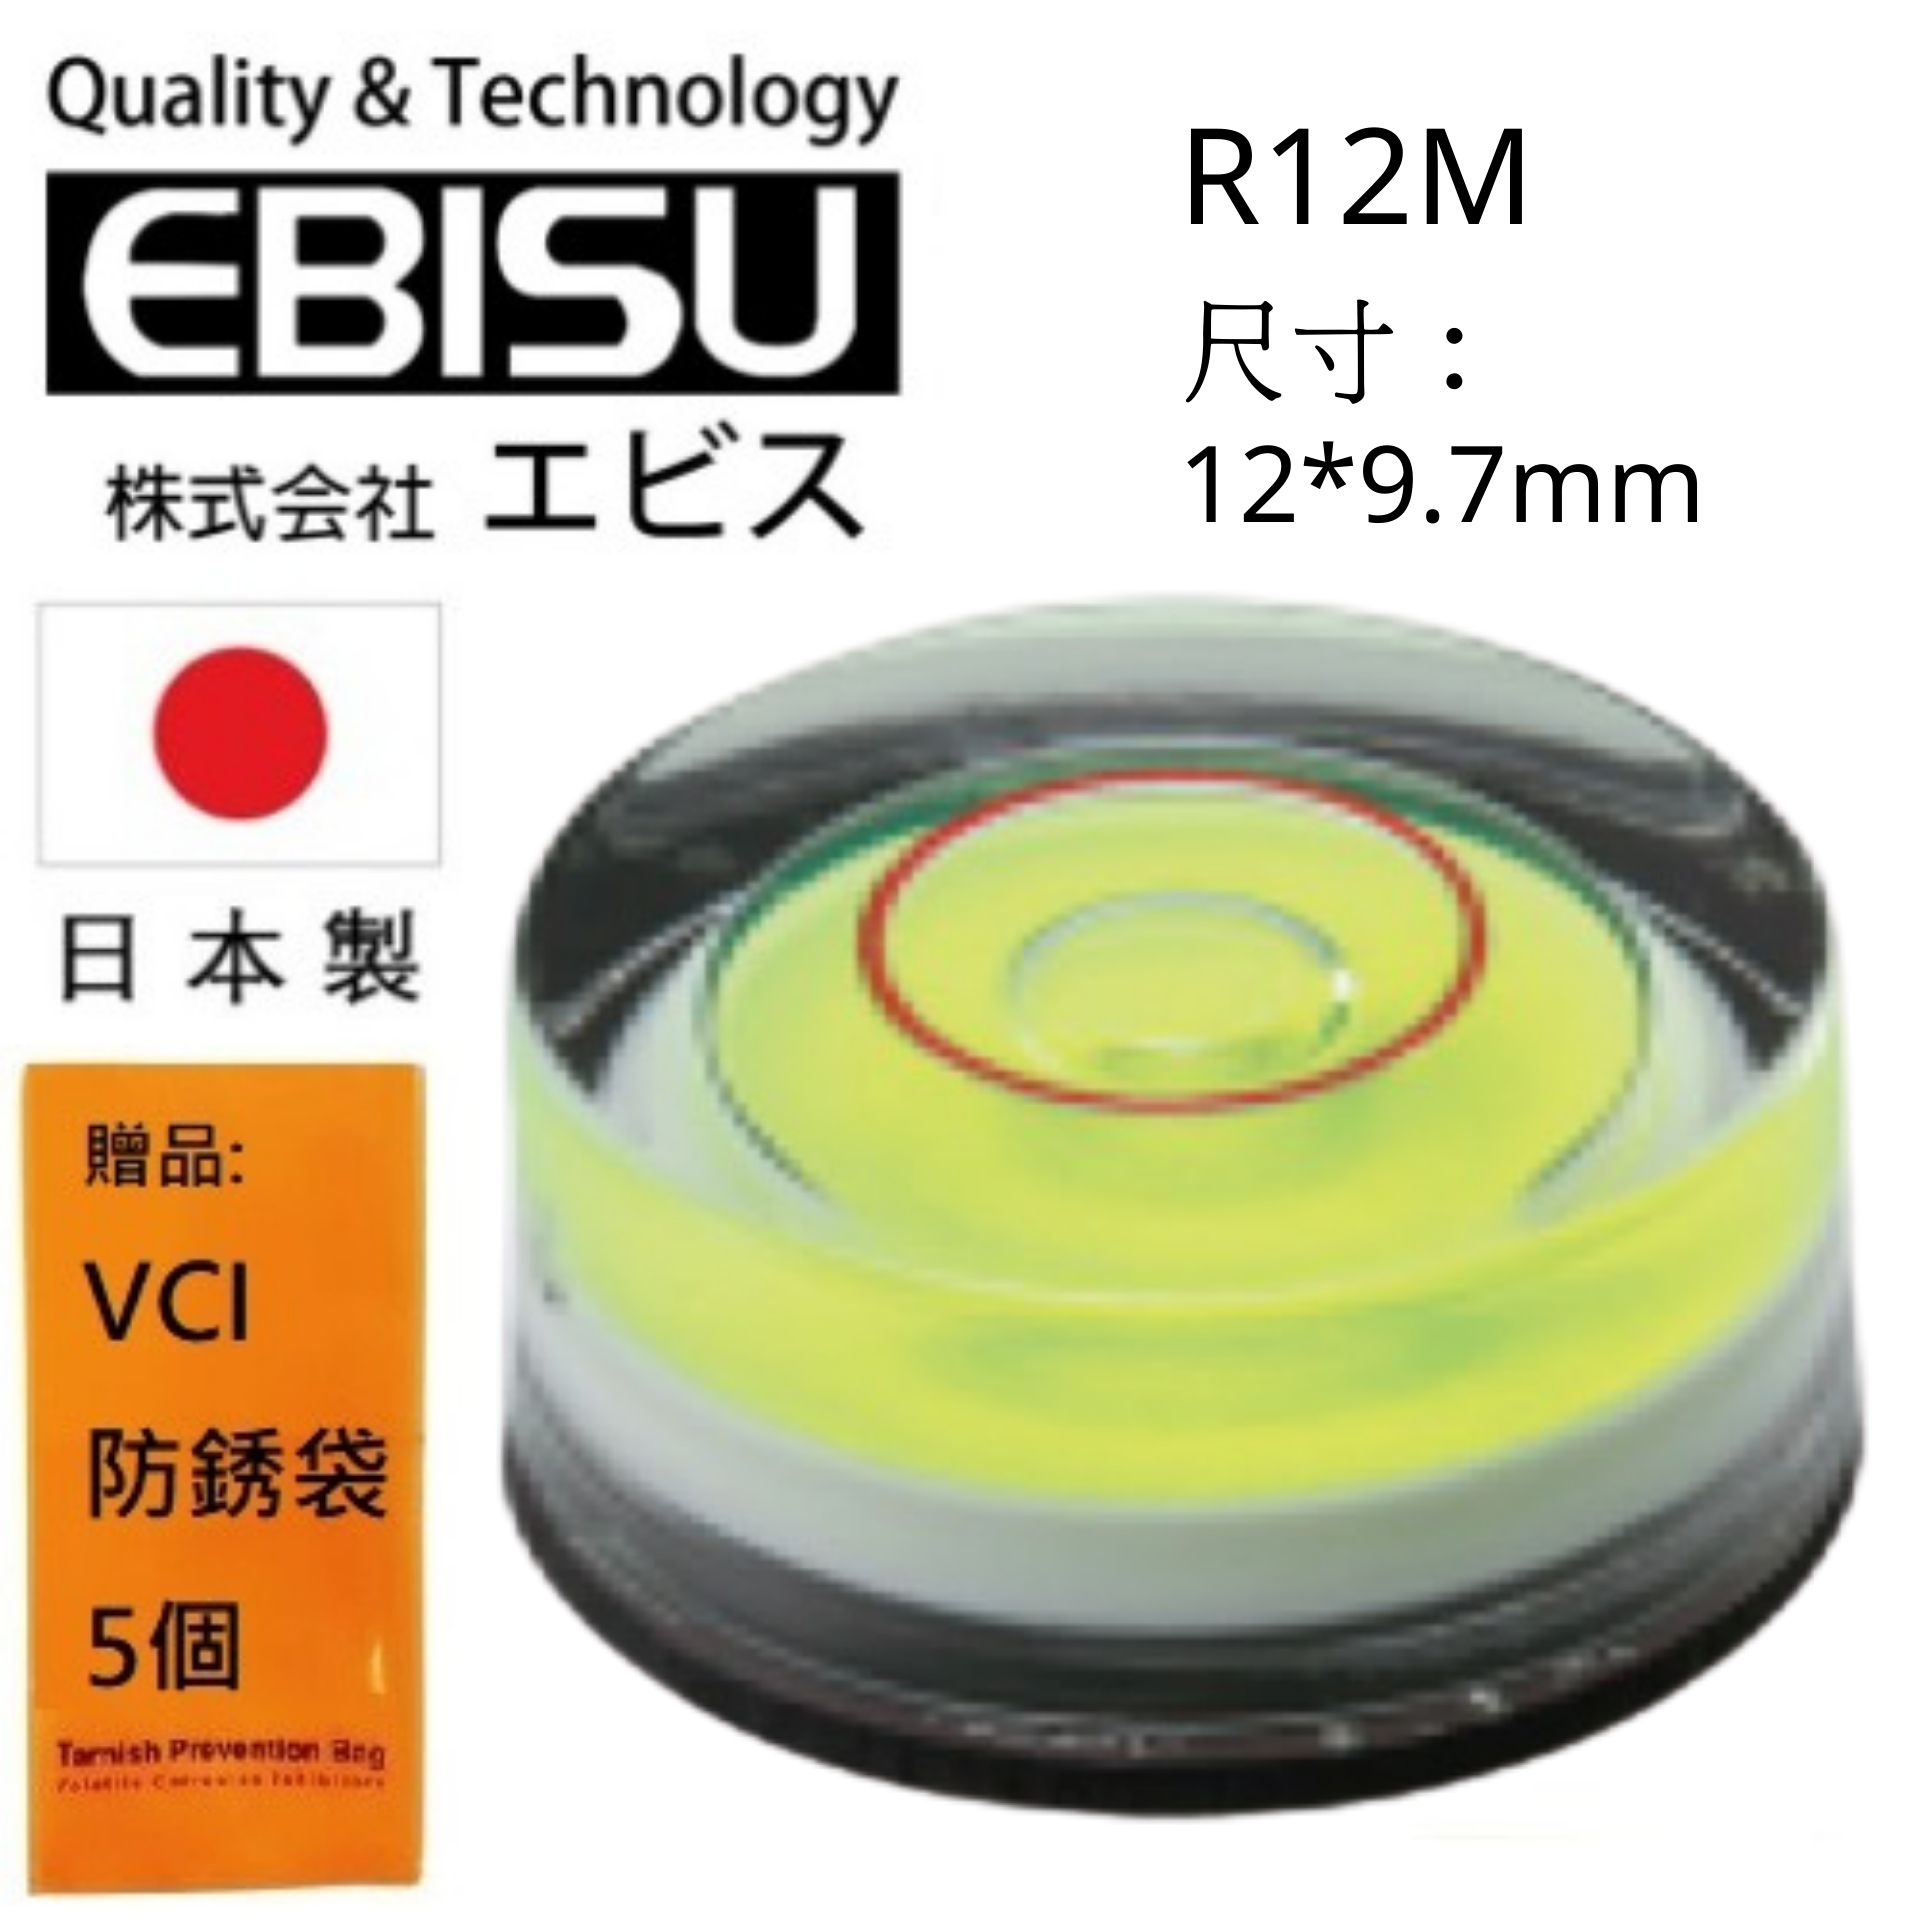 【日本EBISU】 丸型水平氣泡管(有磁) 12×9.7mm R12M 適用於建築.土木.配管.電器